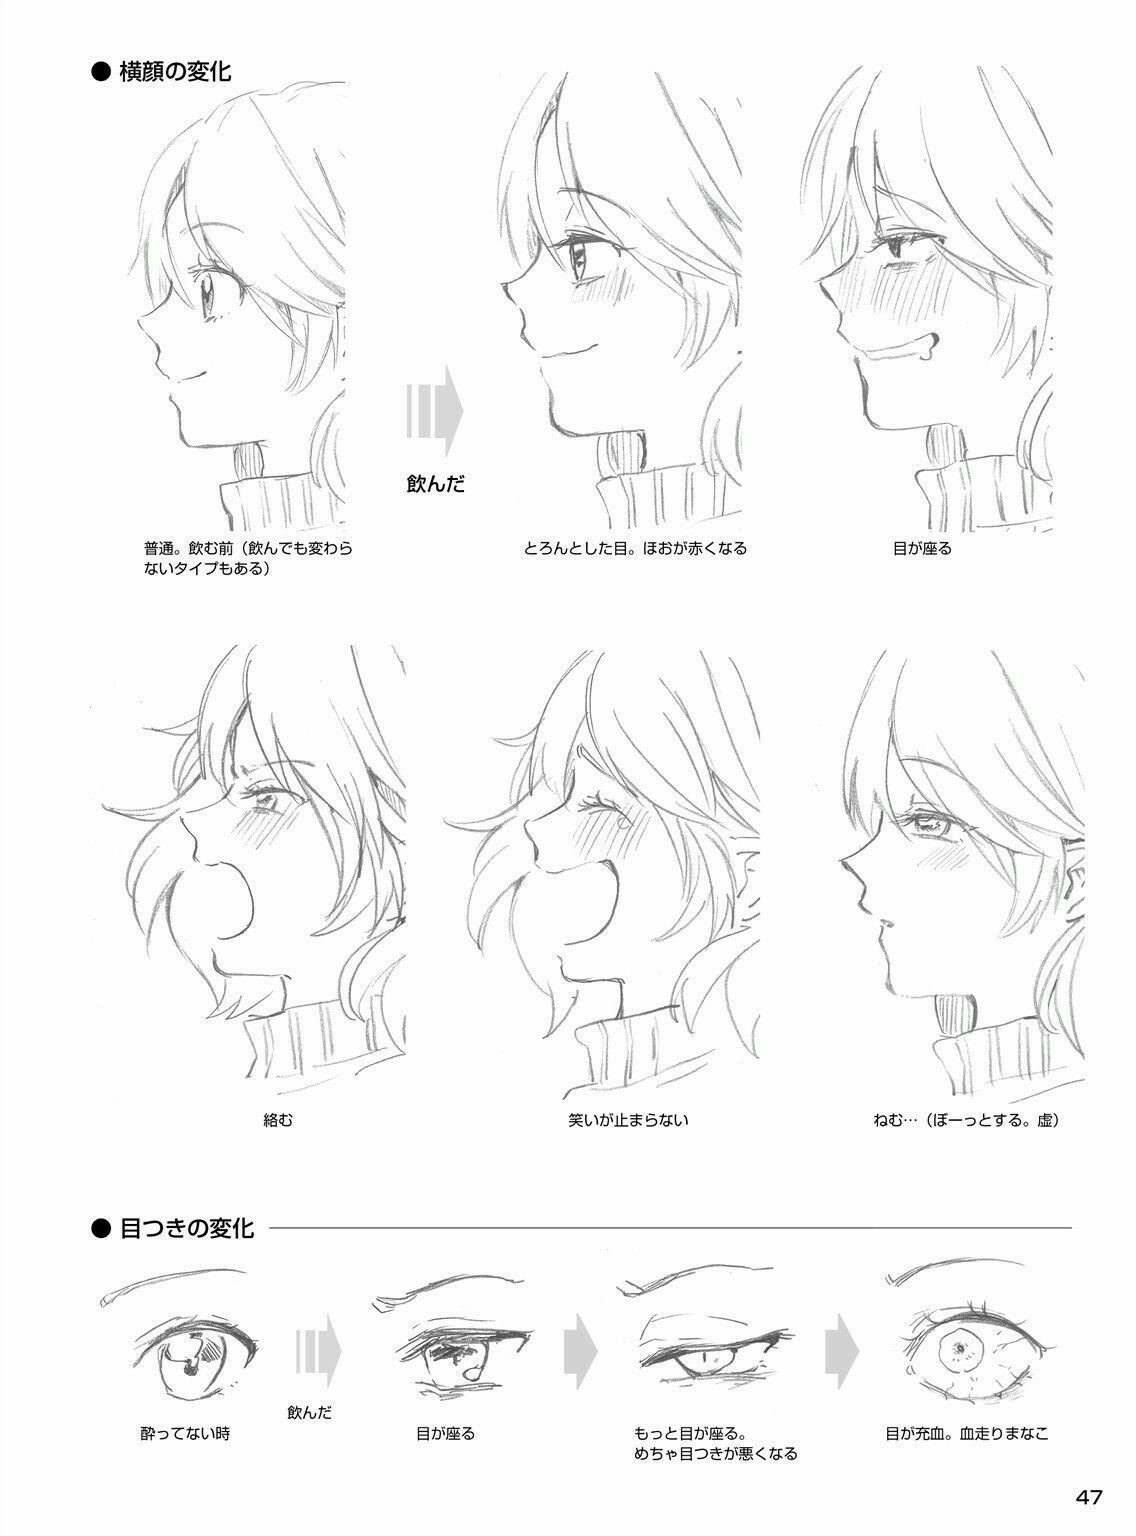 Схема рисования аниме